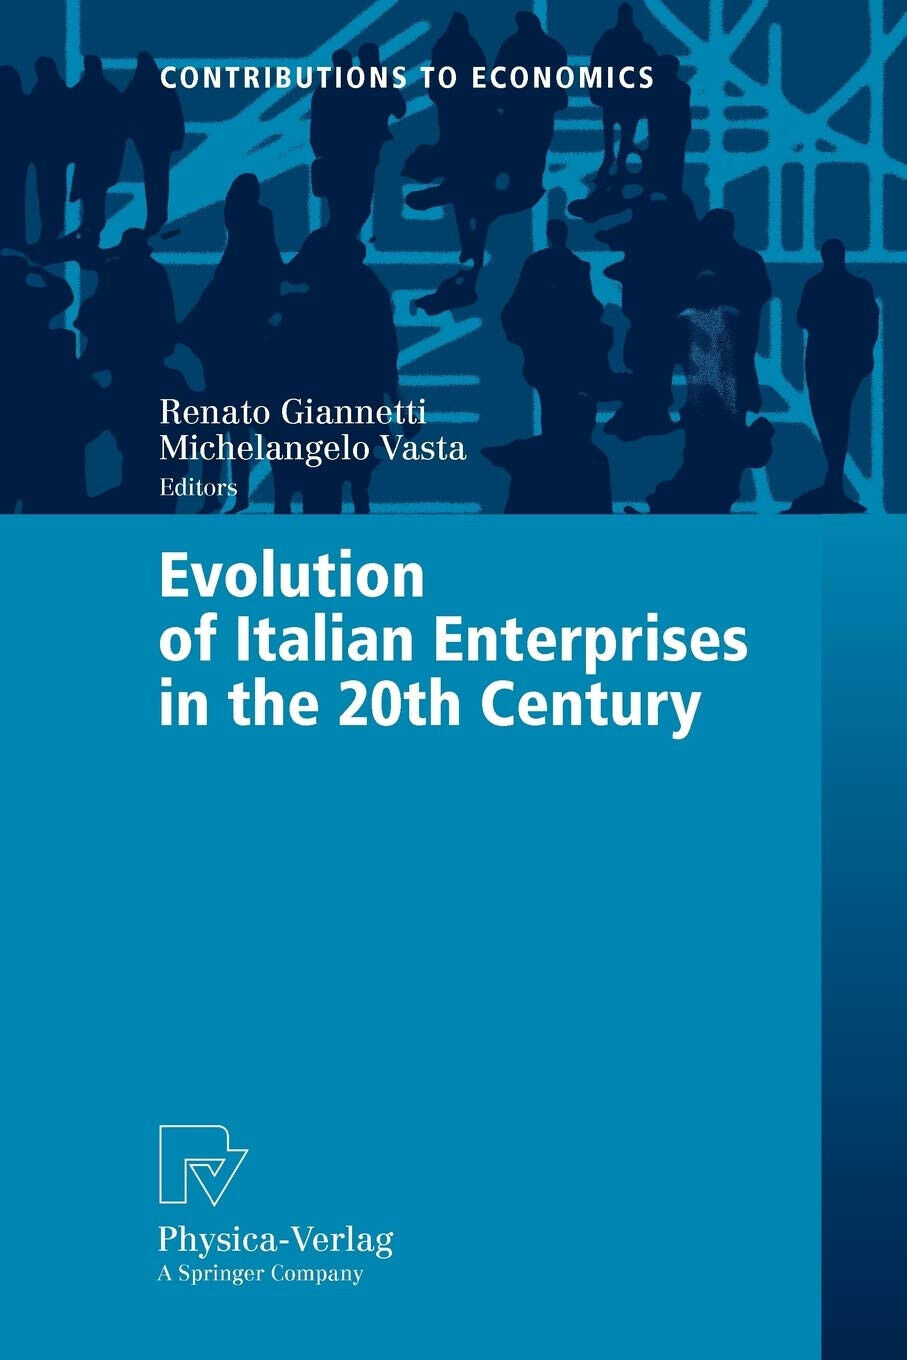 Evolution of Italian Enterprises in the 20th Century - Renato Giannetti  - 2008